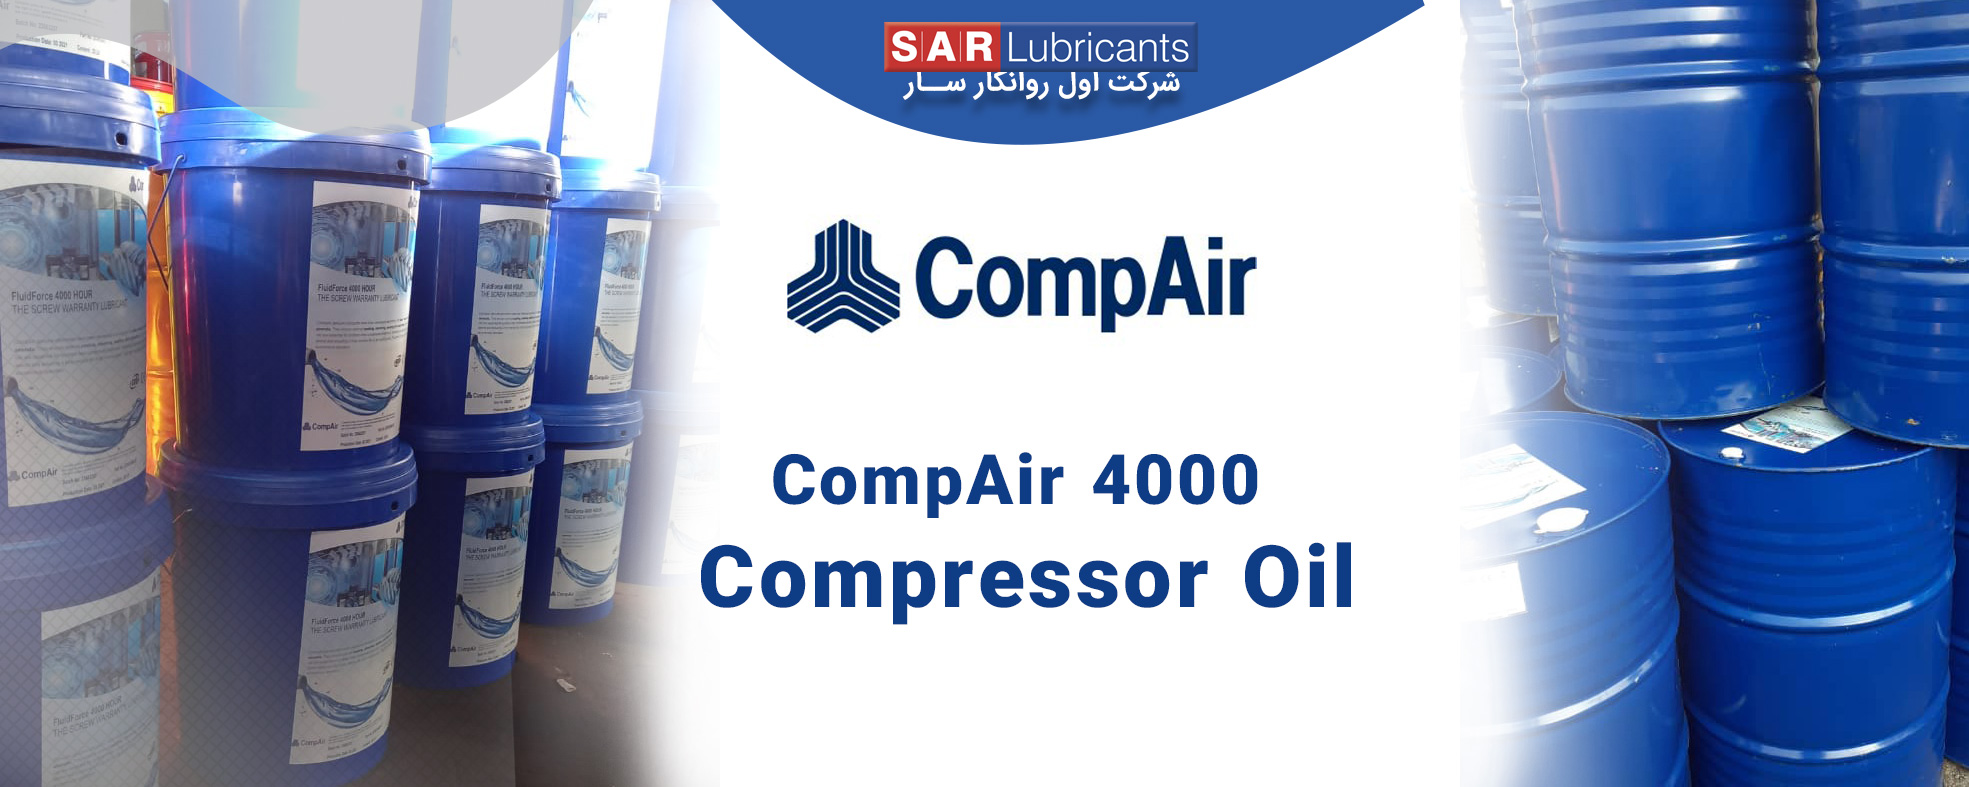 compair4000 - Sar